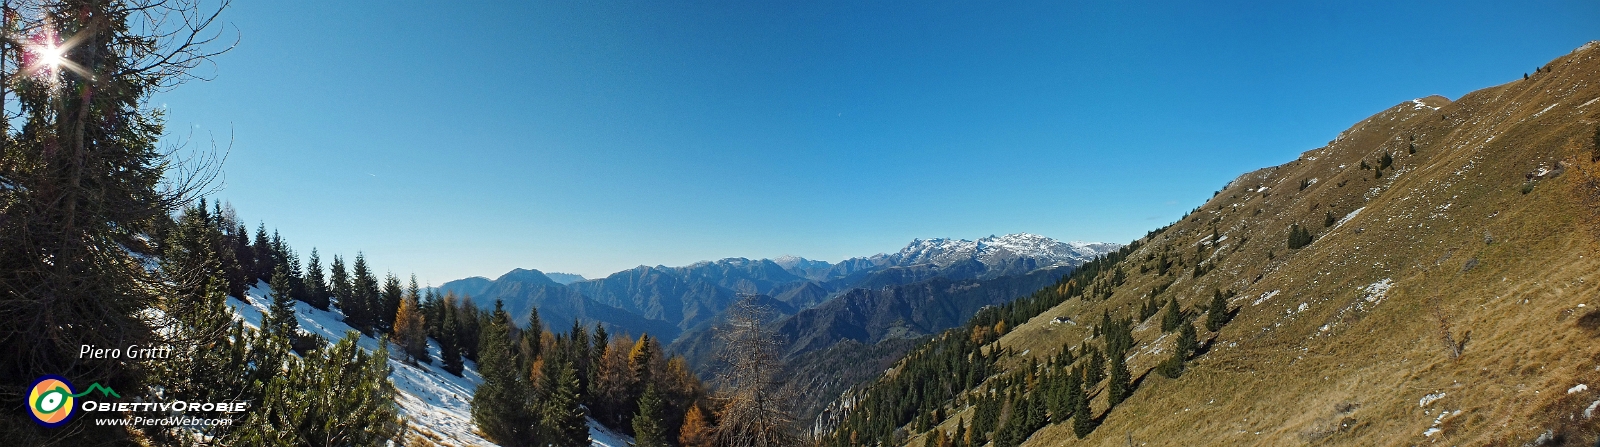 30 panoramica dal Passo di Monte Colle - 1....jpg